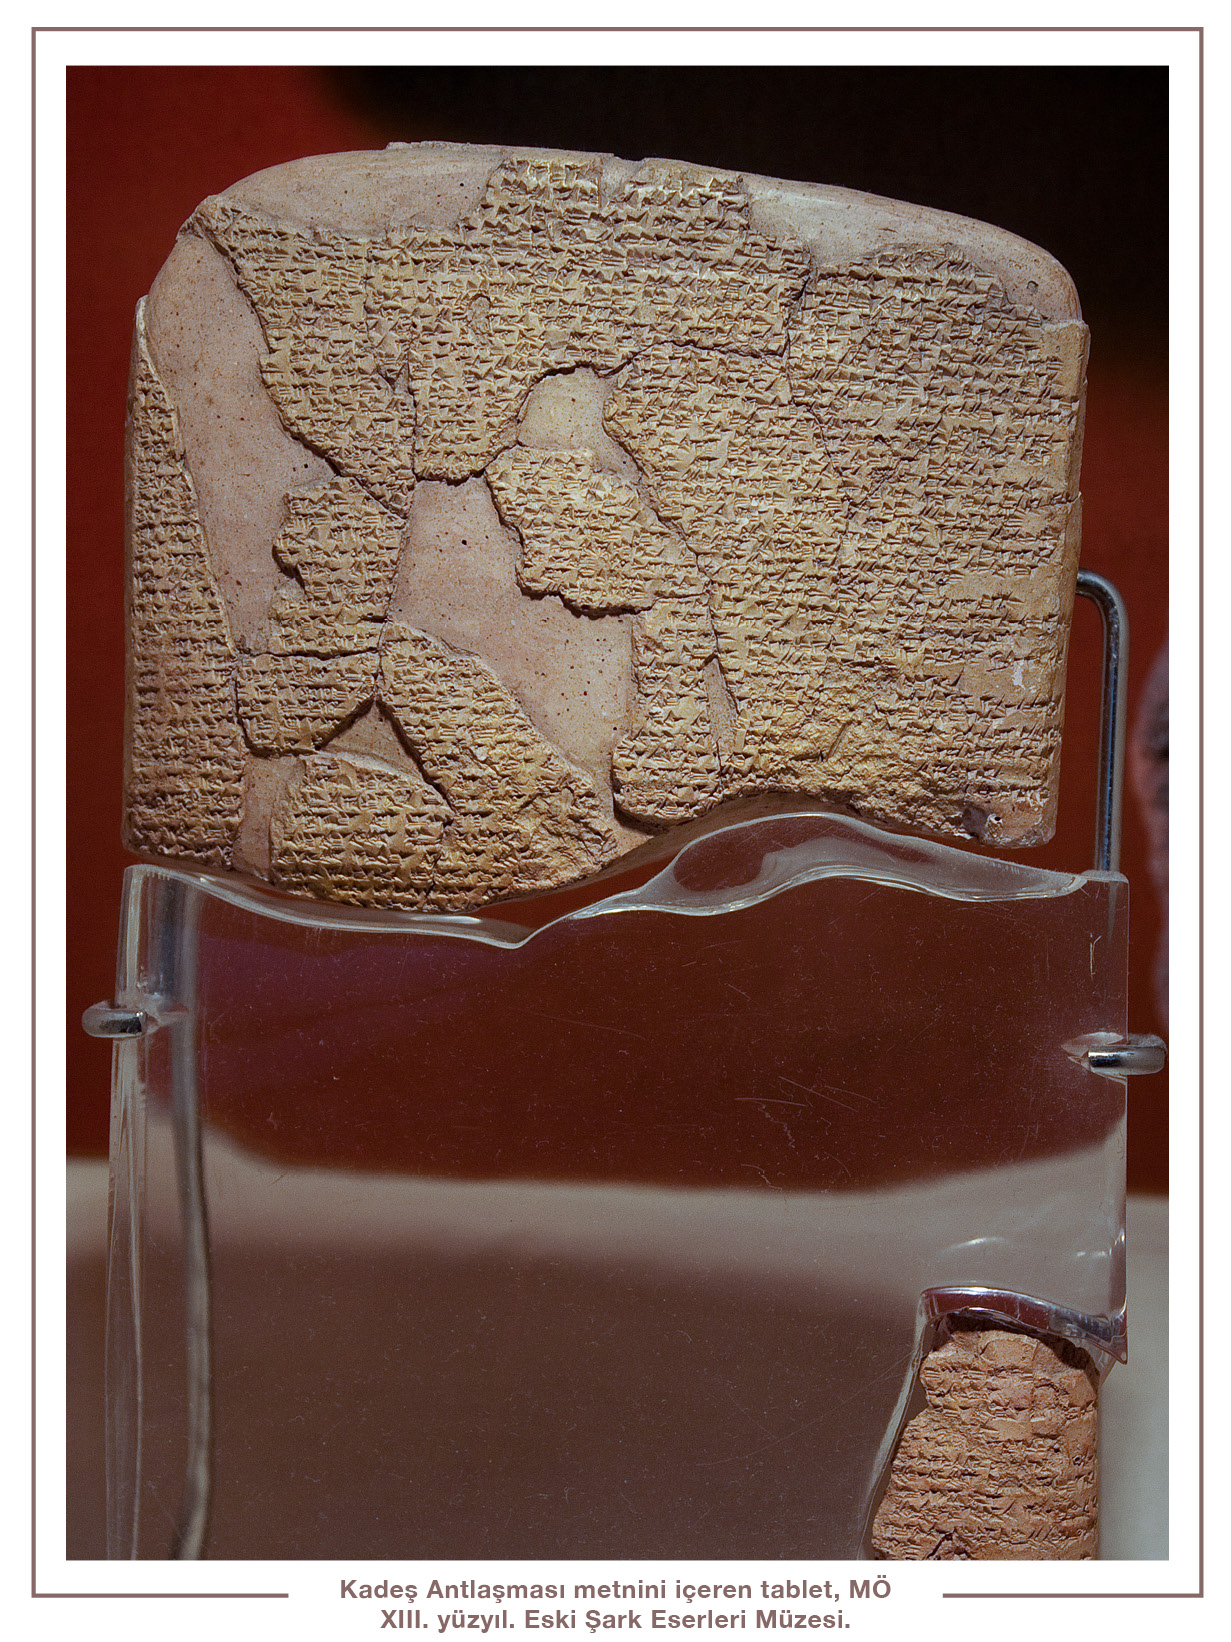 Kadeş Antlaşması metnini içeren tablet, MÖ XIII. yüzyıl. Eski Şark Eserleri Müzesi.